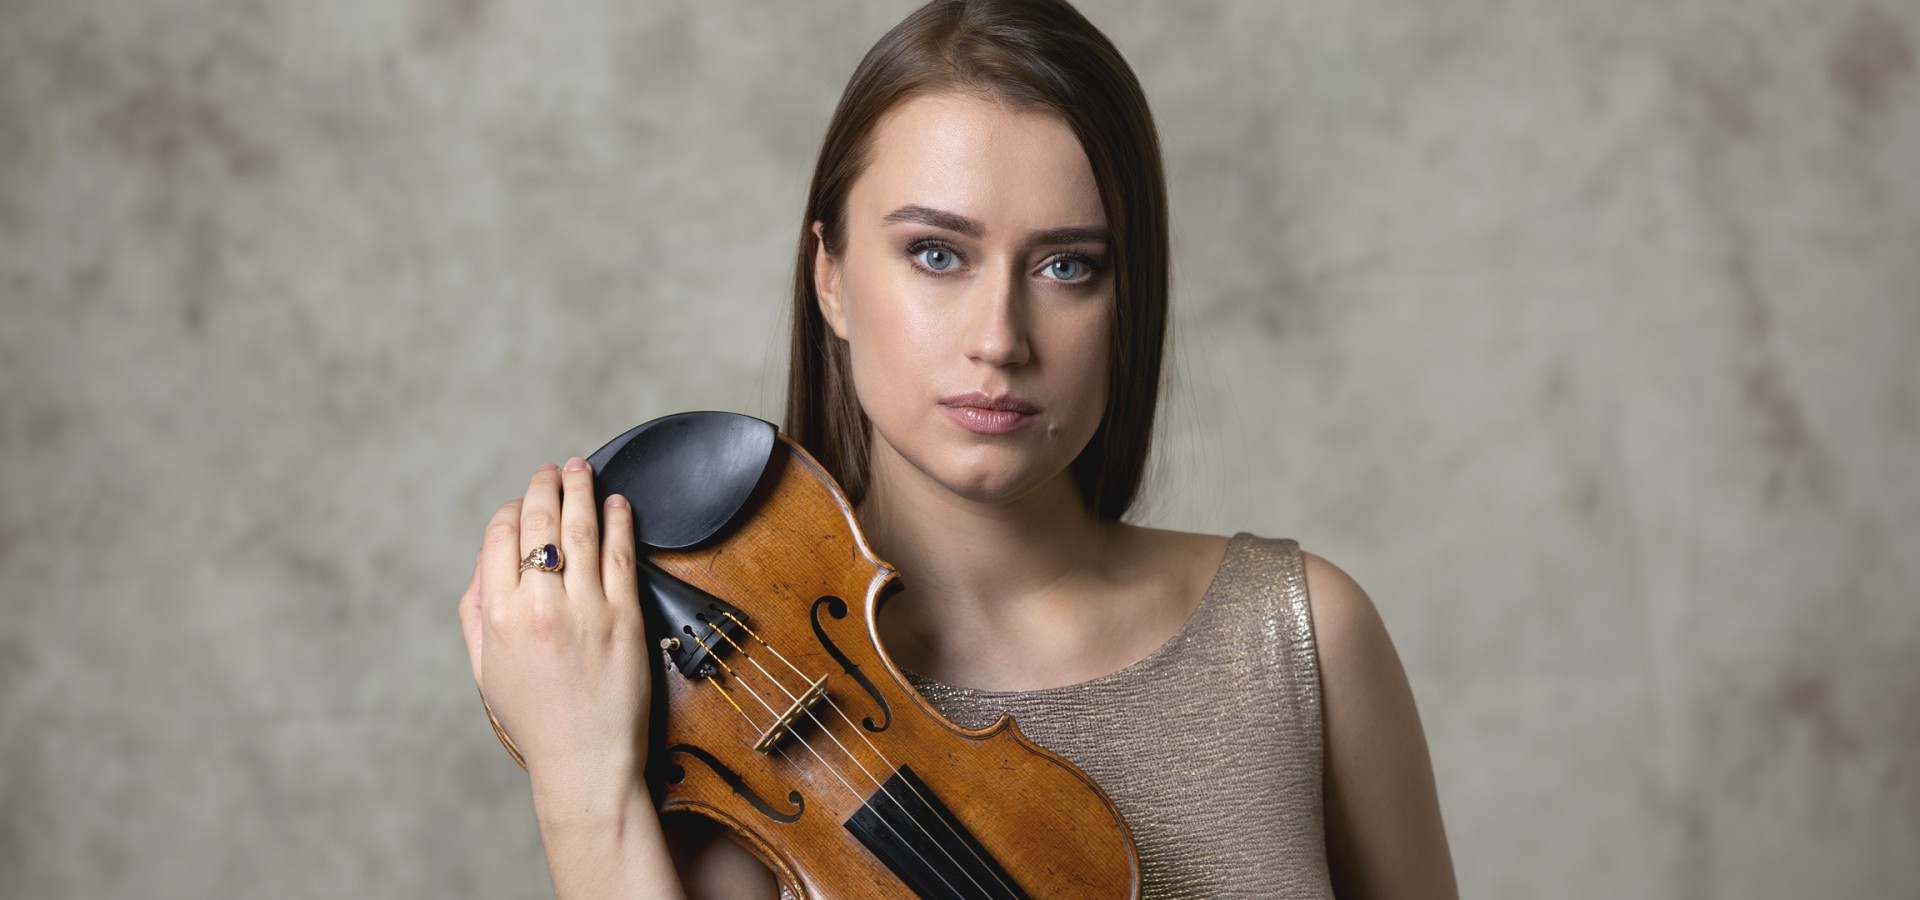 Kristine Balanas debuta junto a la Orquesta Filarmónica de Gran Canaria como solista del Concierto para violín de Beethoven dirigido por Trevor Pinnock